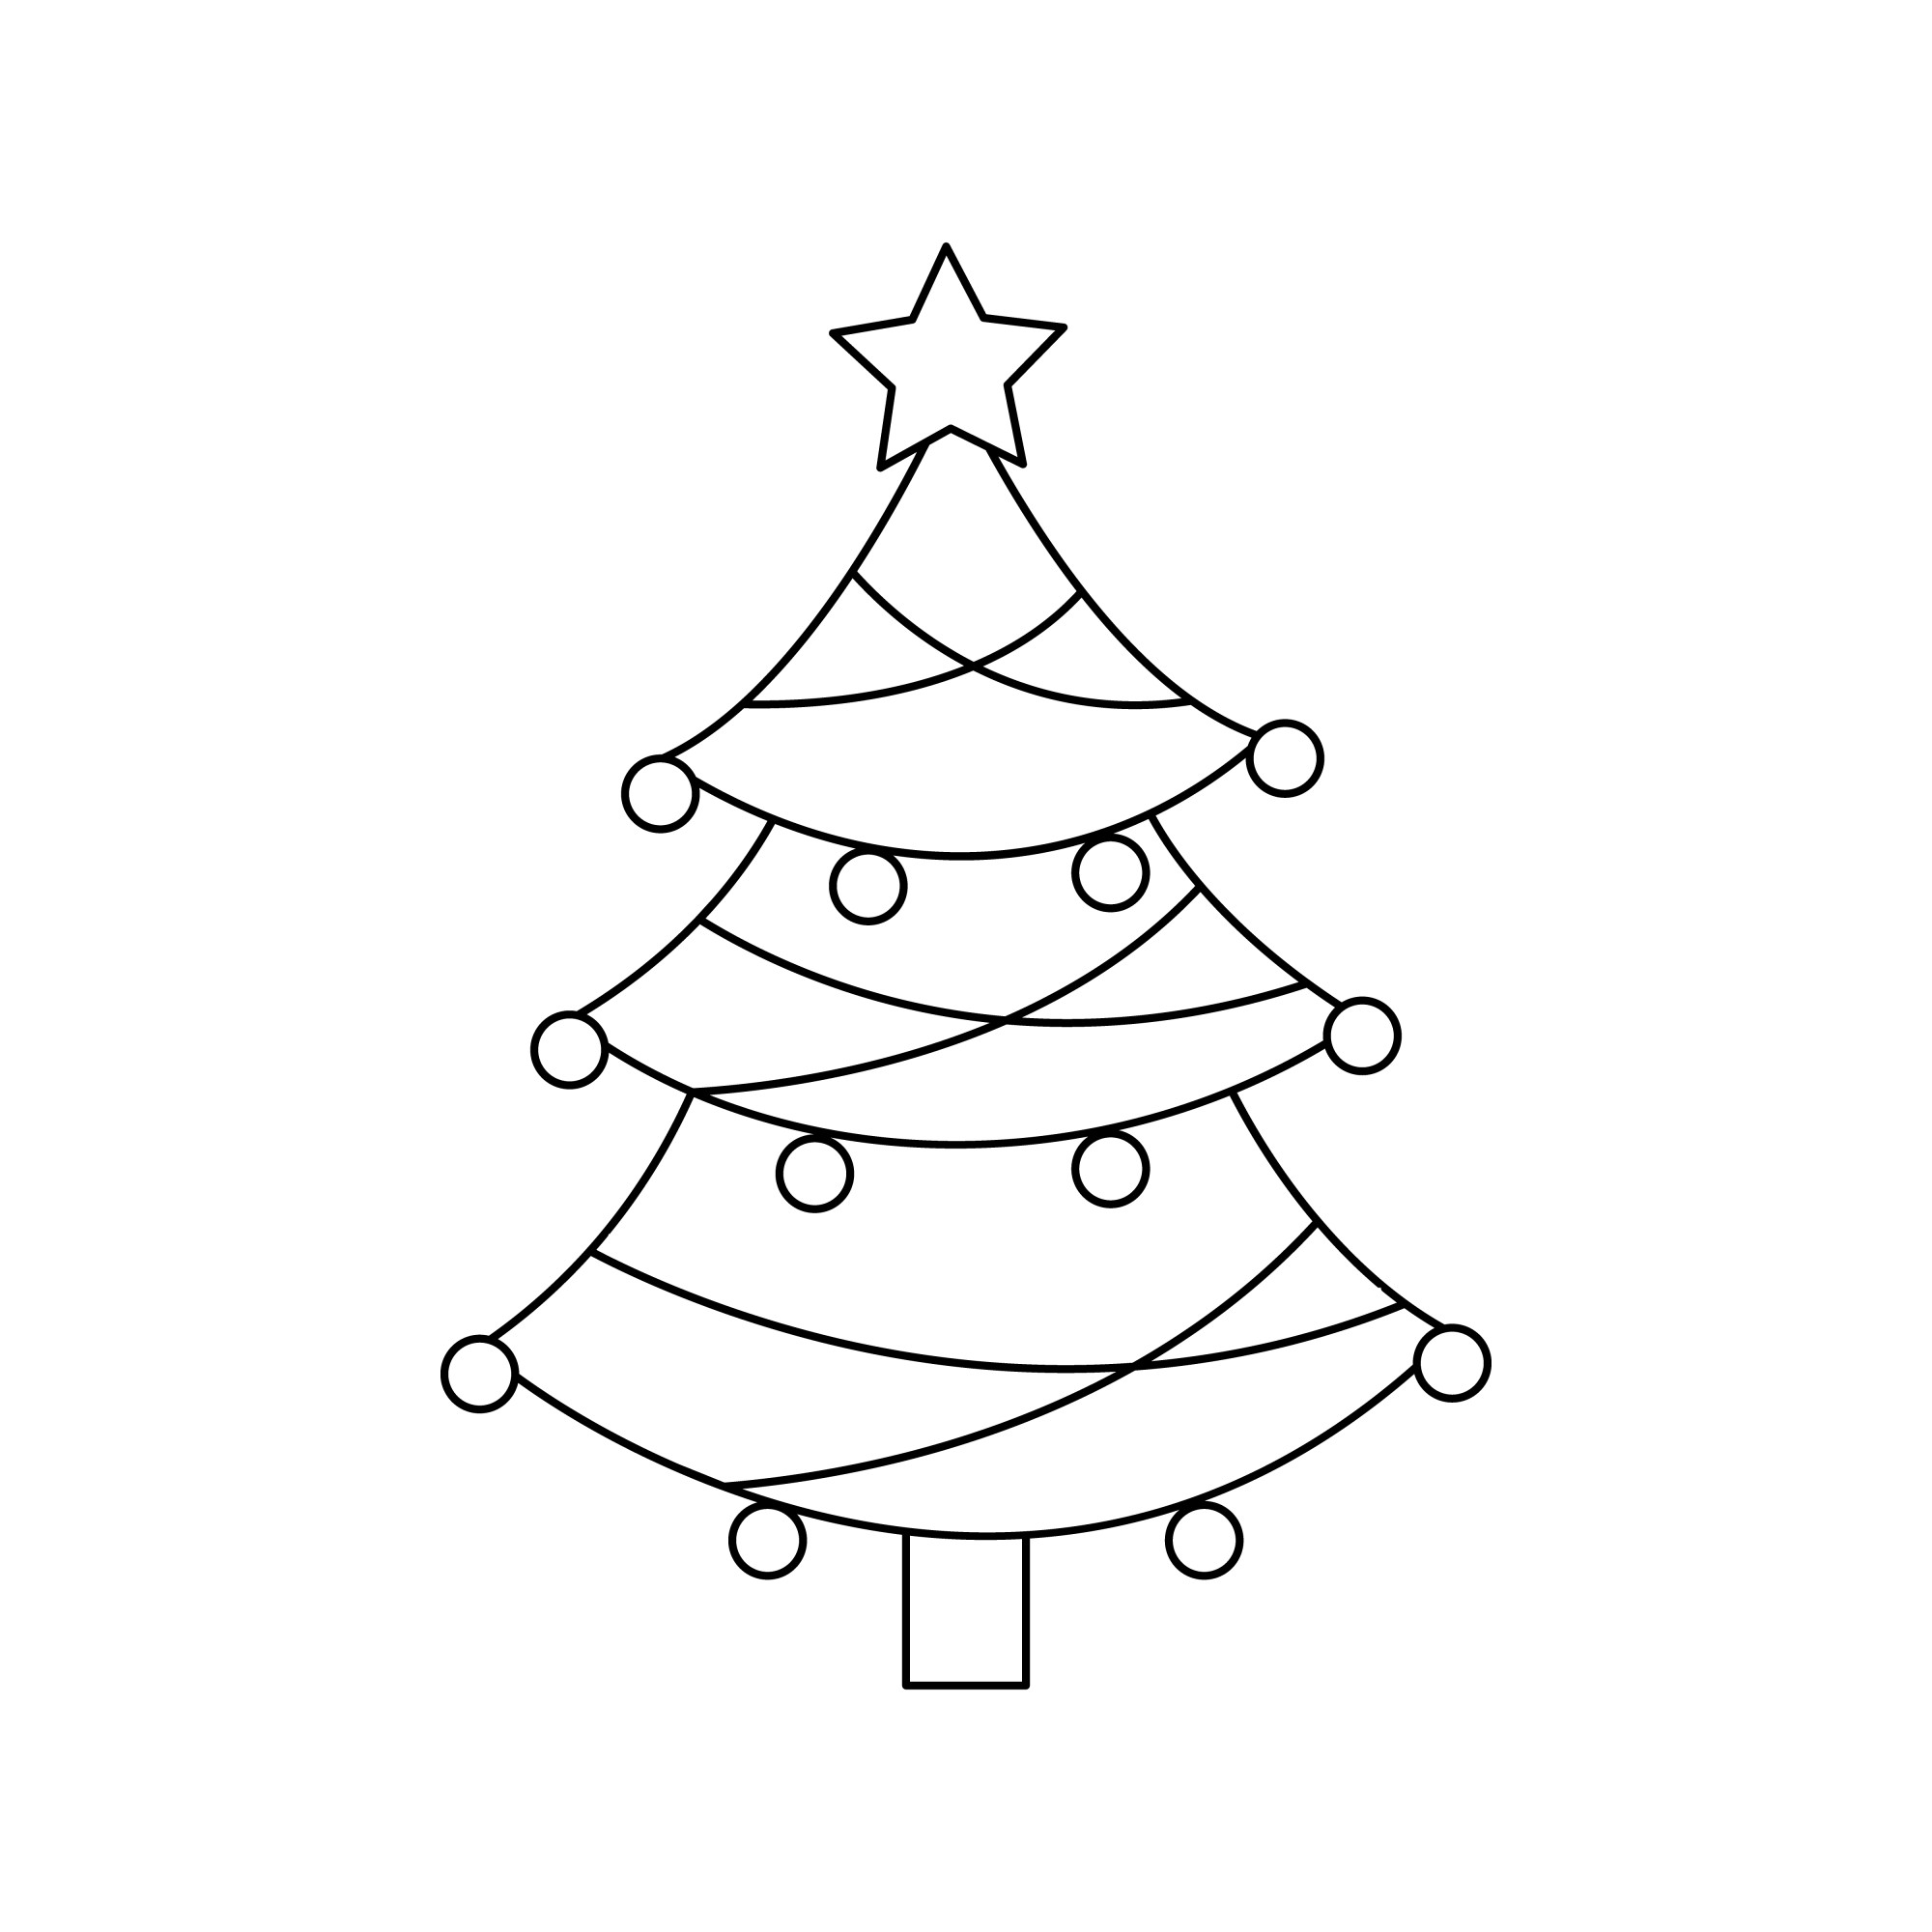 Раскраска для детей: новогодняя ёлка со звездой «Радость праздника»